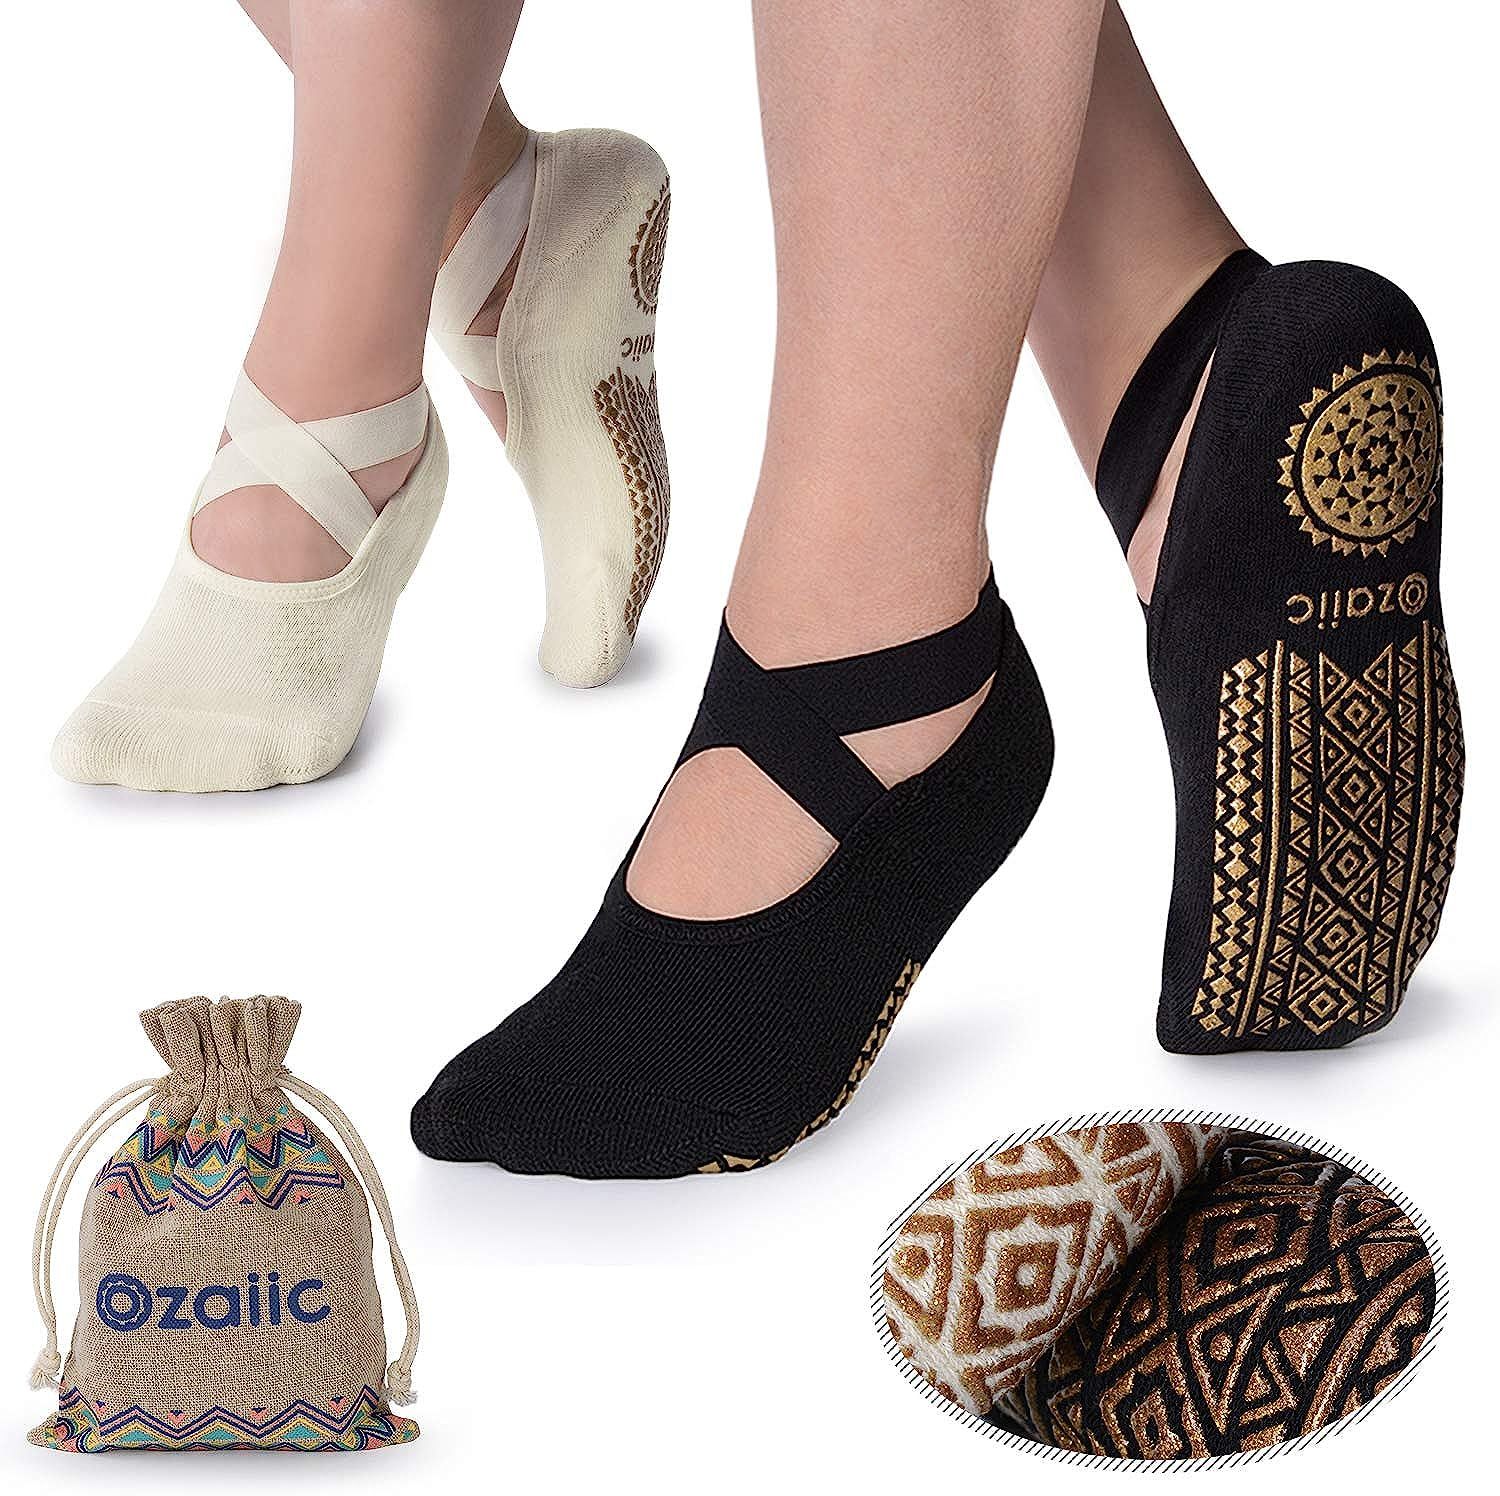 Yoga Socks for Women Non-Slip Grips & Straps, Ideal for Pilates, Pure Barre, Ballet, Dance, Baref... | Amazon (US)